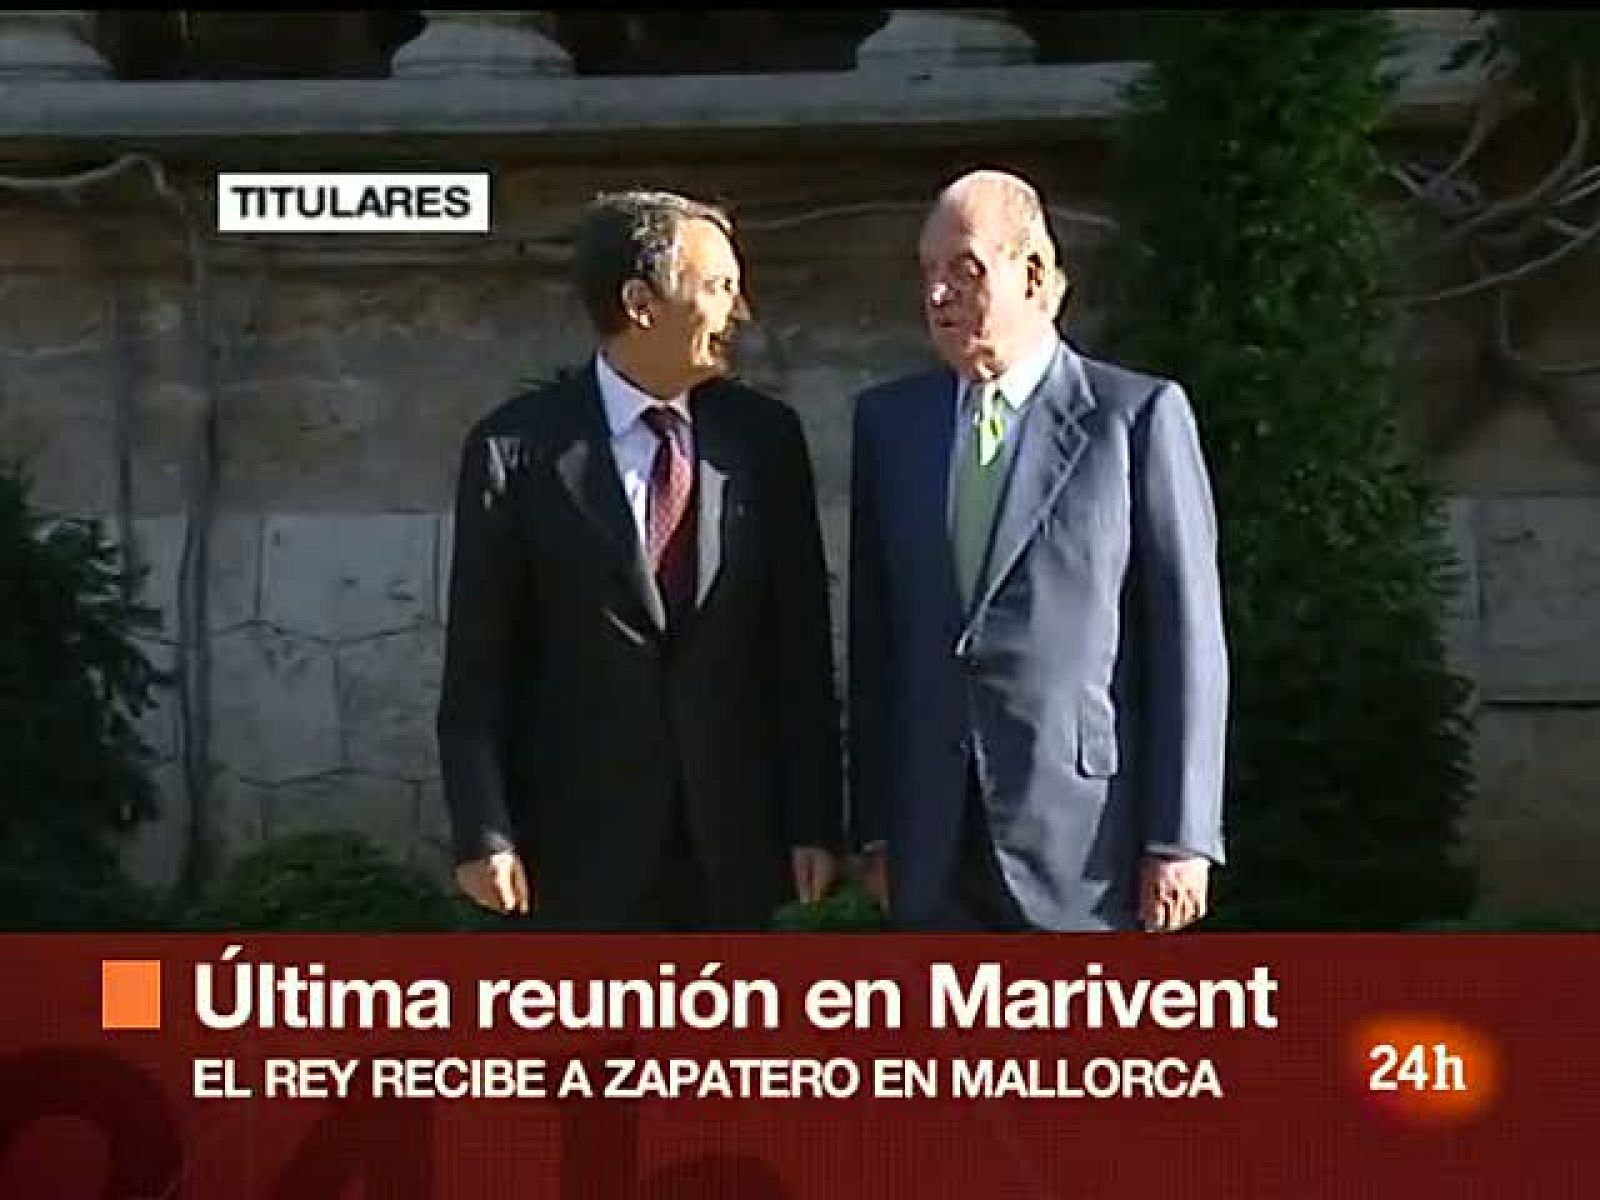  Último despacho de Zapatero con el rey en Mallorca